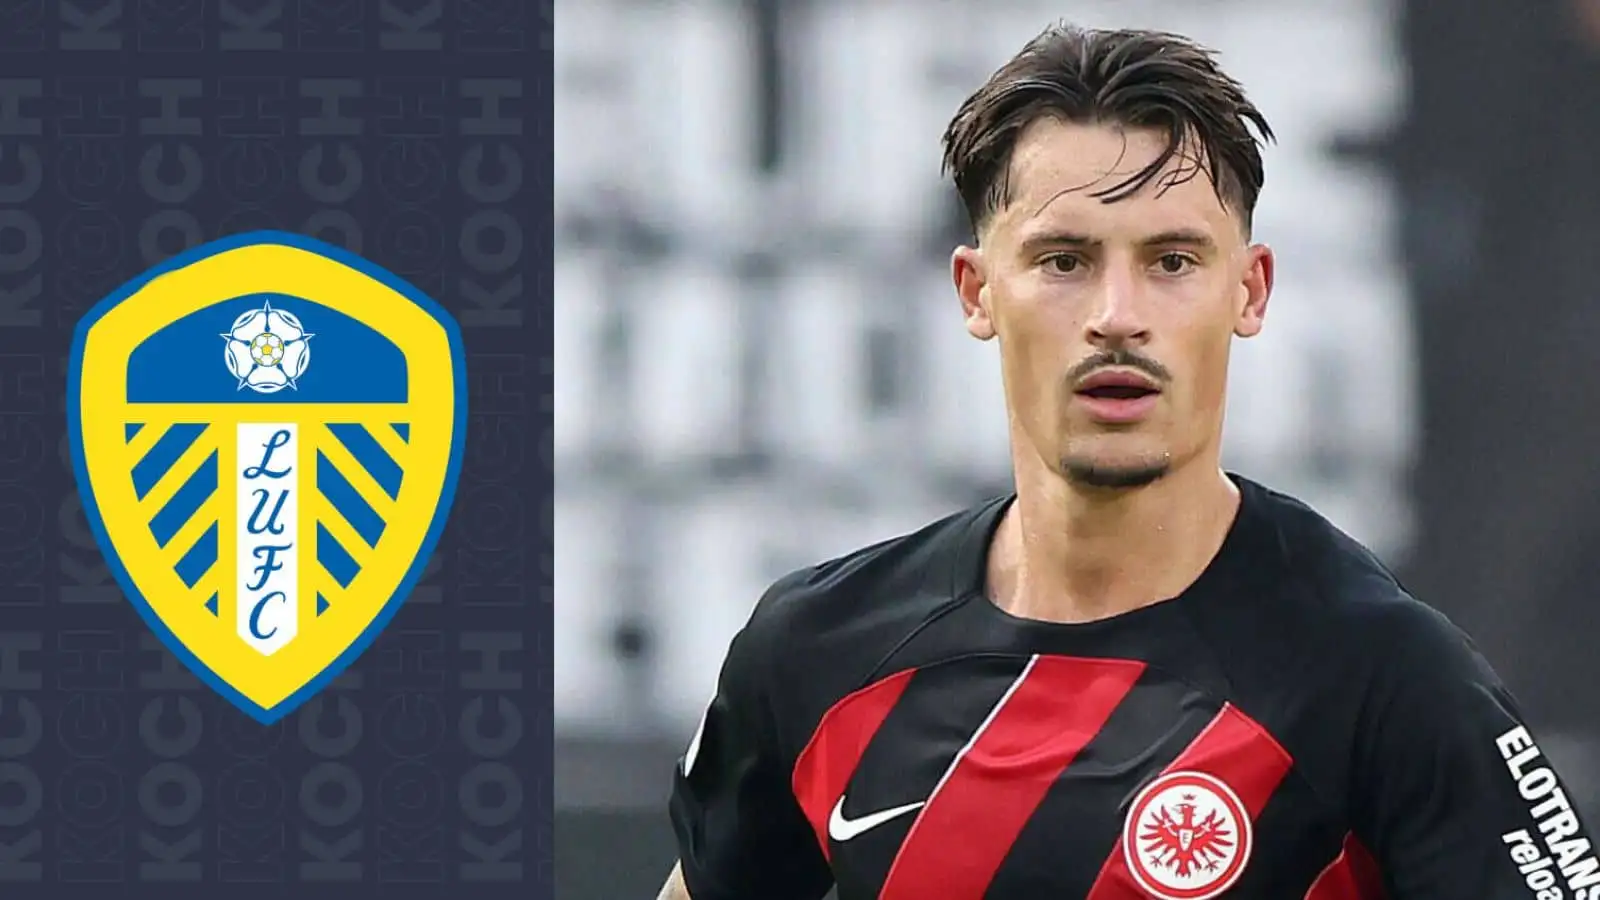 Robin Koch is on loan at Eintracht Frankfurt from Leeds